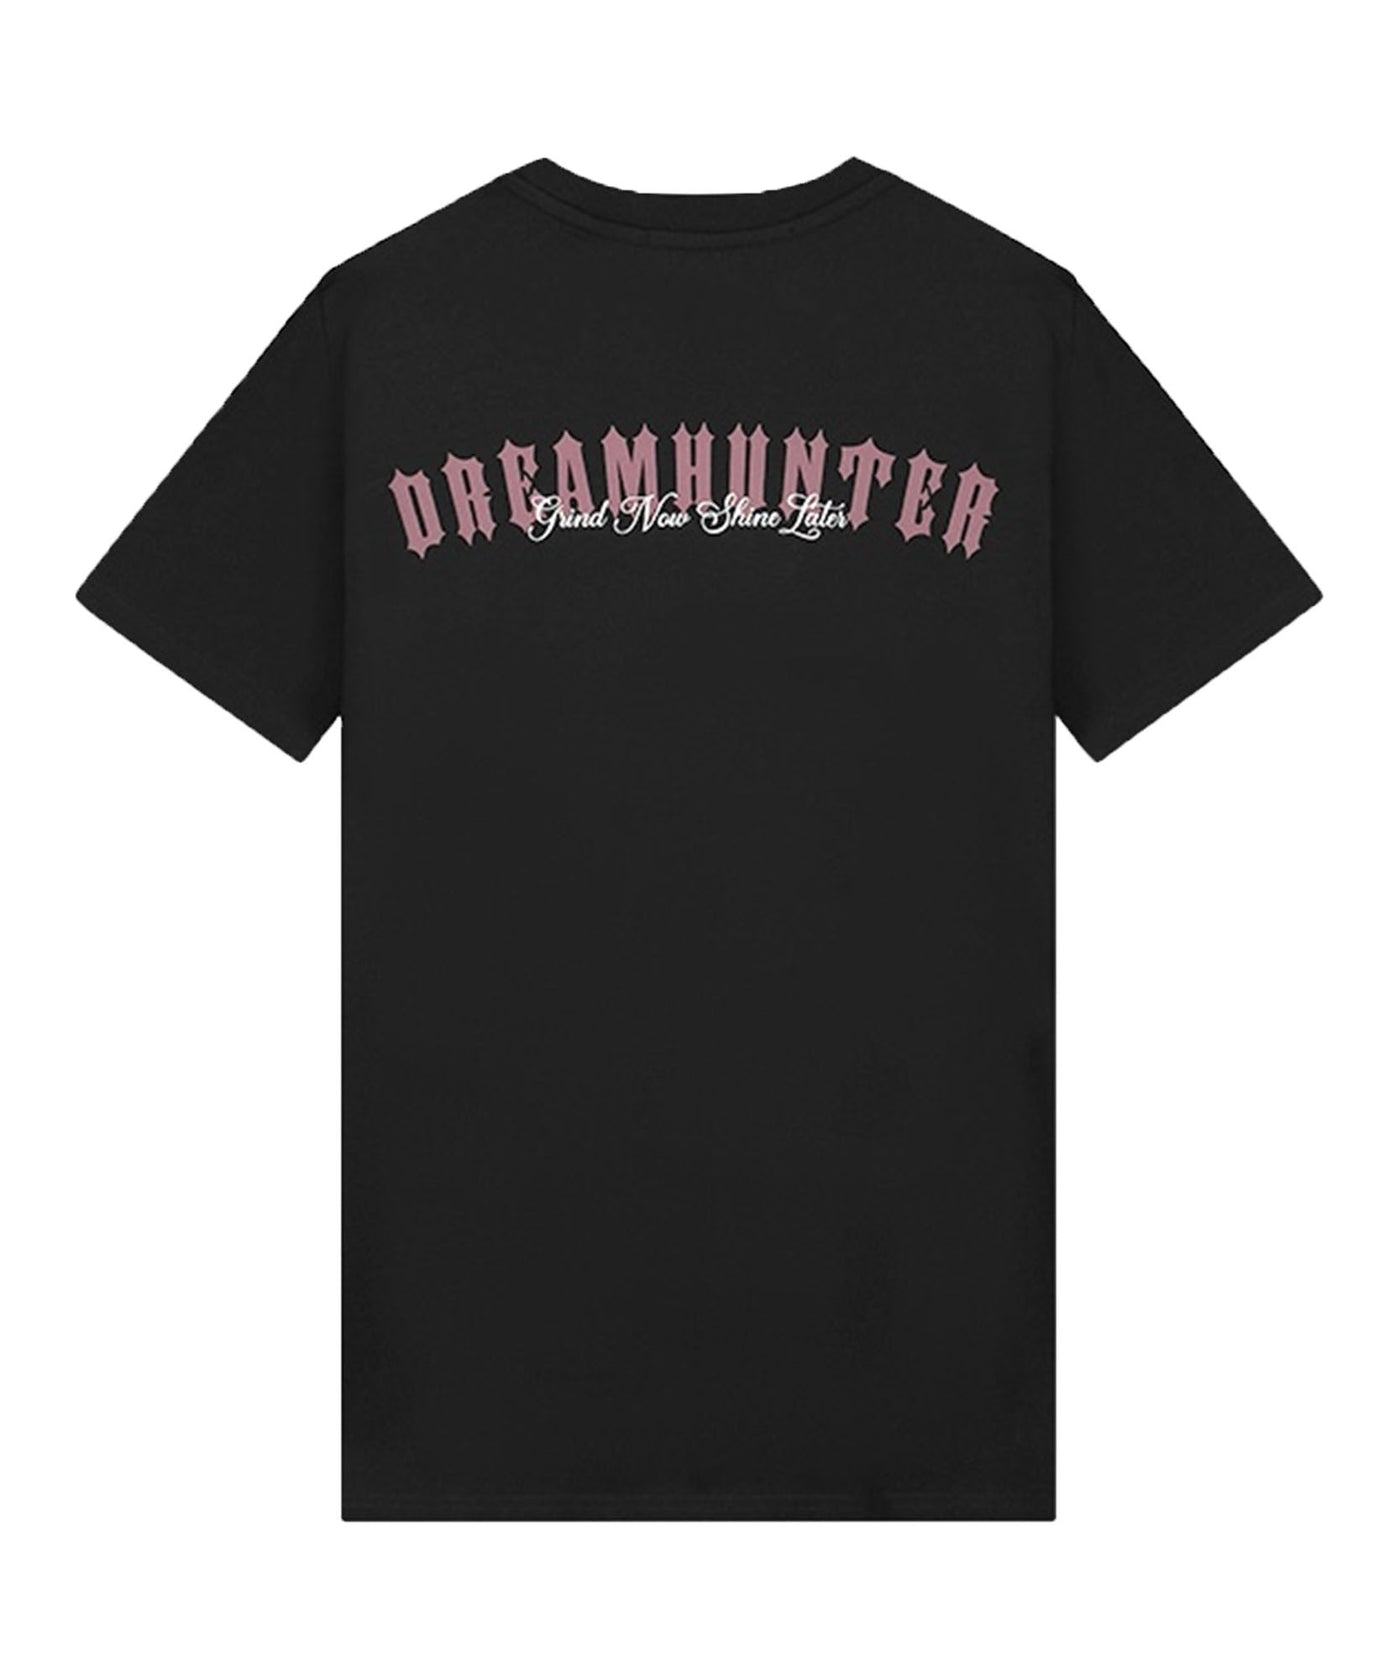 Malelions - Dreamhunter - T-shirt - Burgundy/black